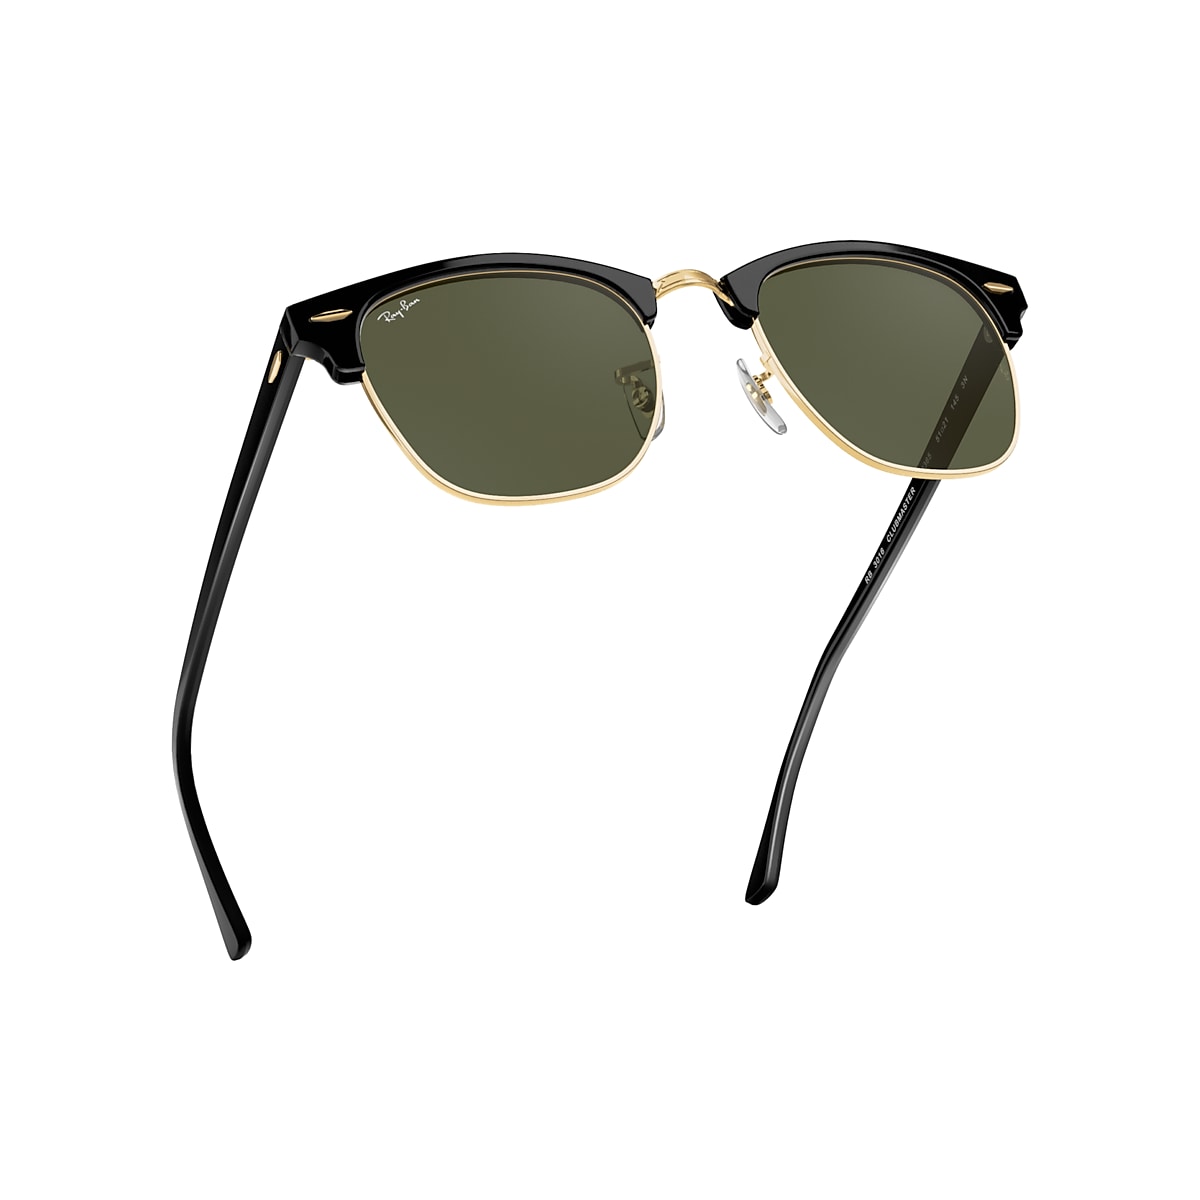 Inheems In de meeste gevallen meer en meer Clubmaster Classic Sunglasses in Black On Gold and Green | Ray-Ban®